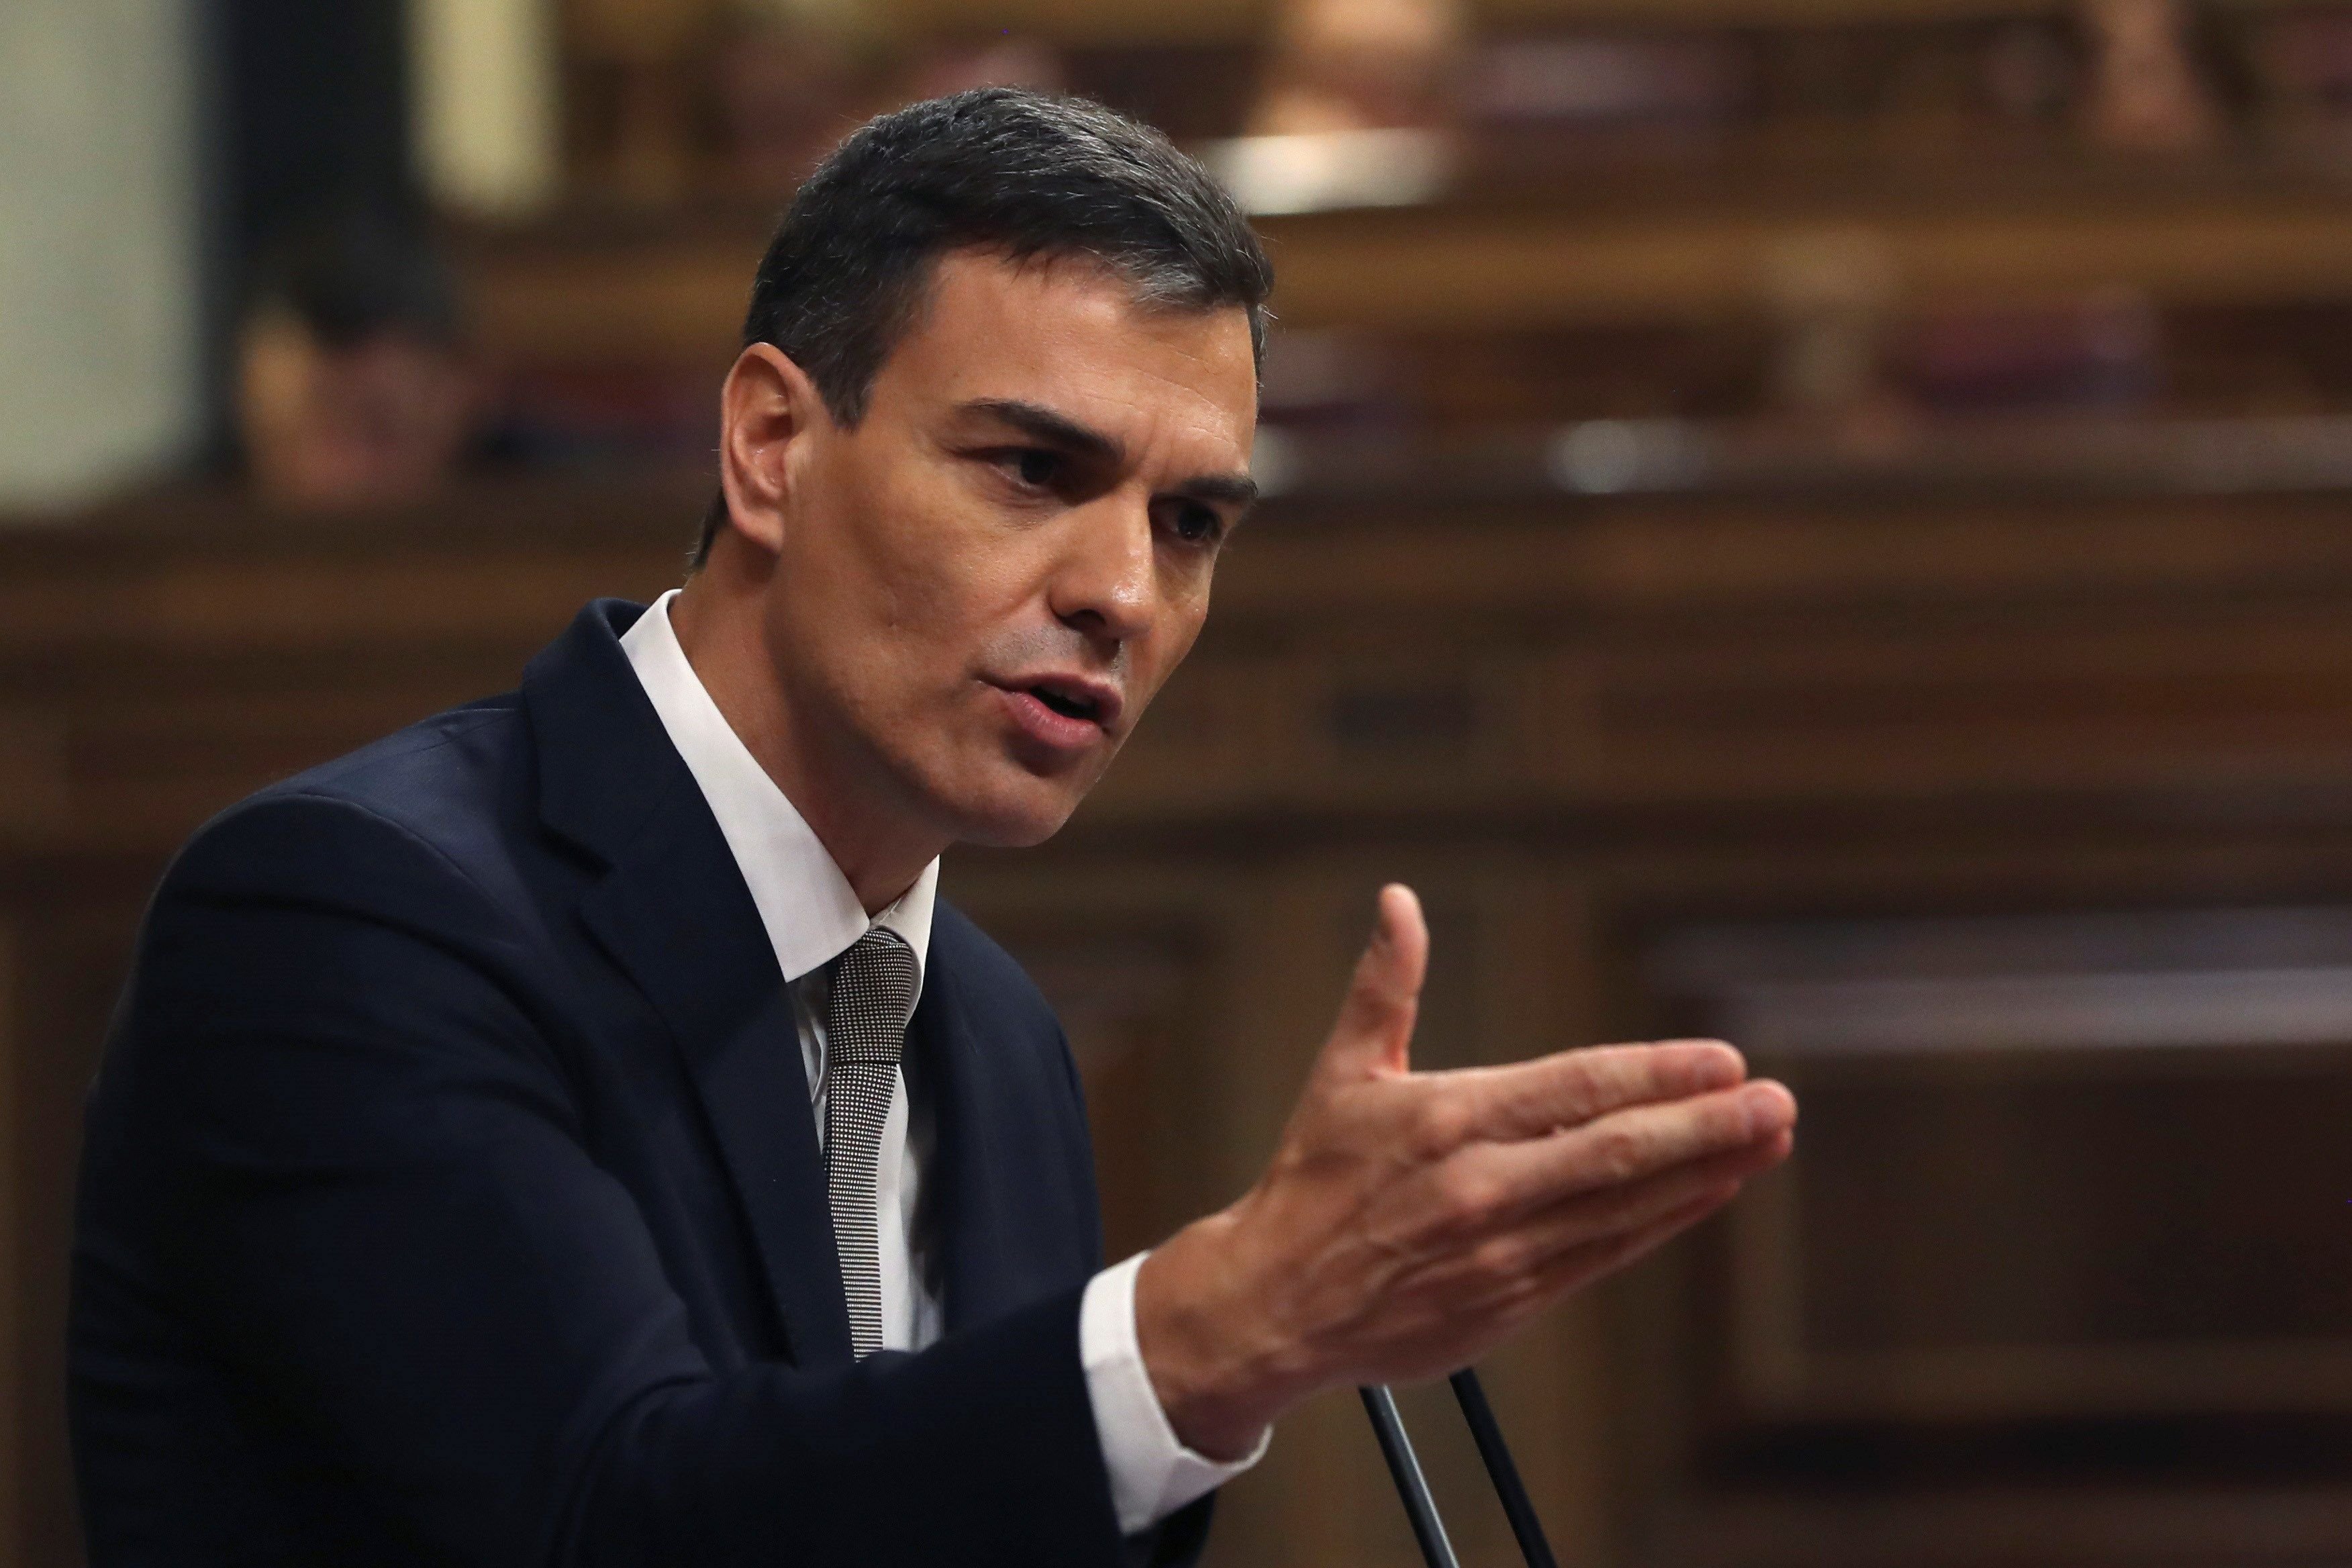 Els nous impostos de Pedro Sánchez: com són i com ens afecten?